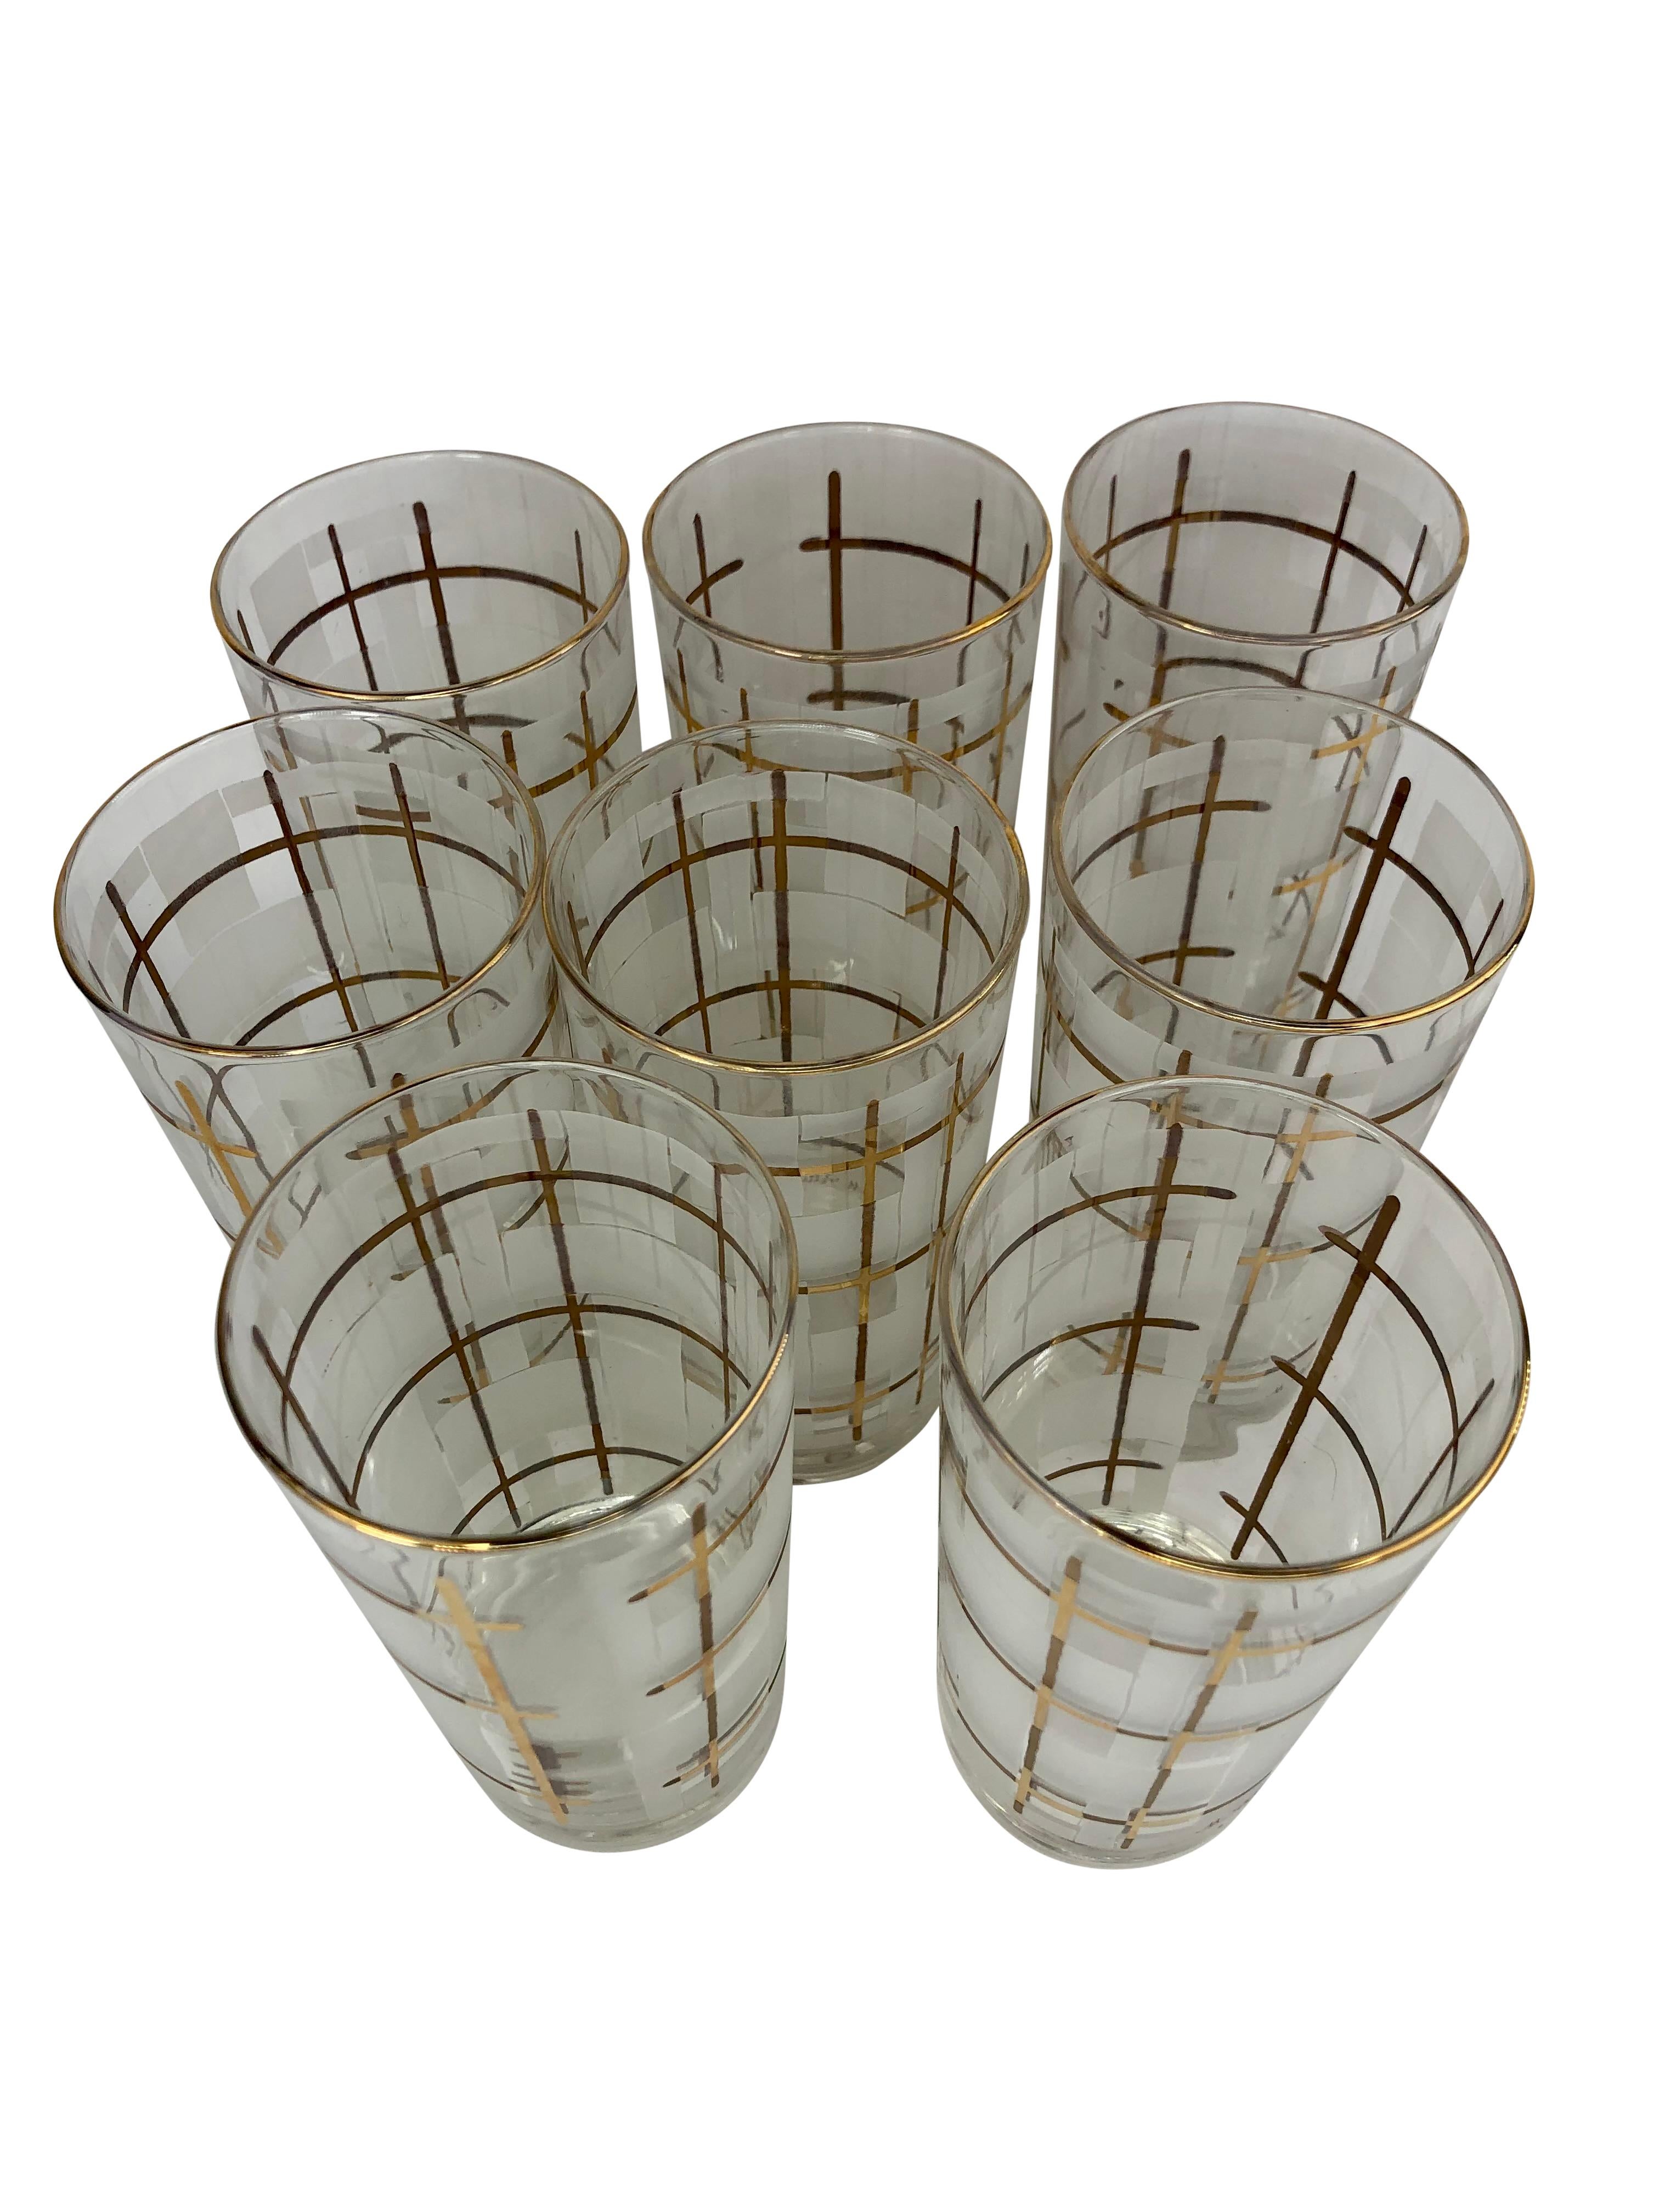 Ensemble de 8 verres Highball Vintage Libbey M. Petti signés avec un design en damier doré et givré. Les verres mesurent 5 1/2